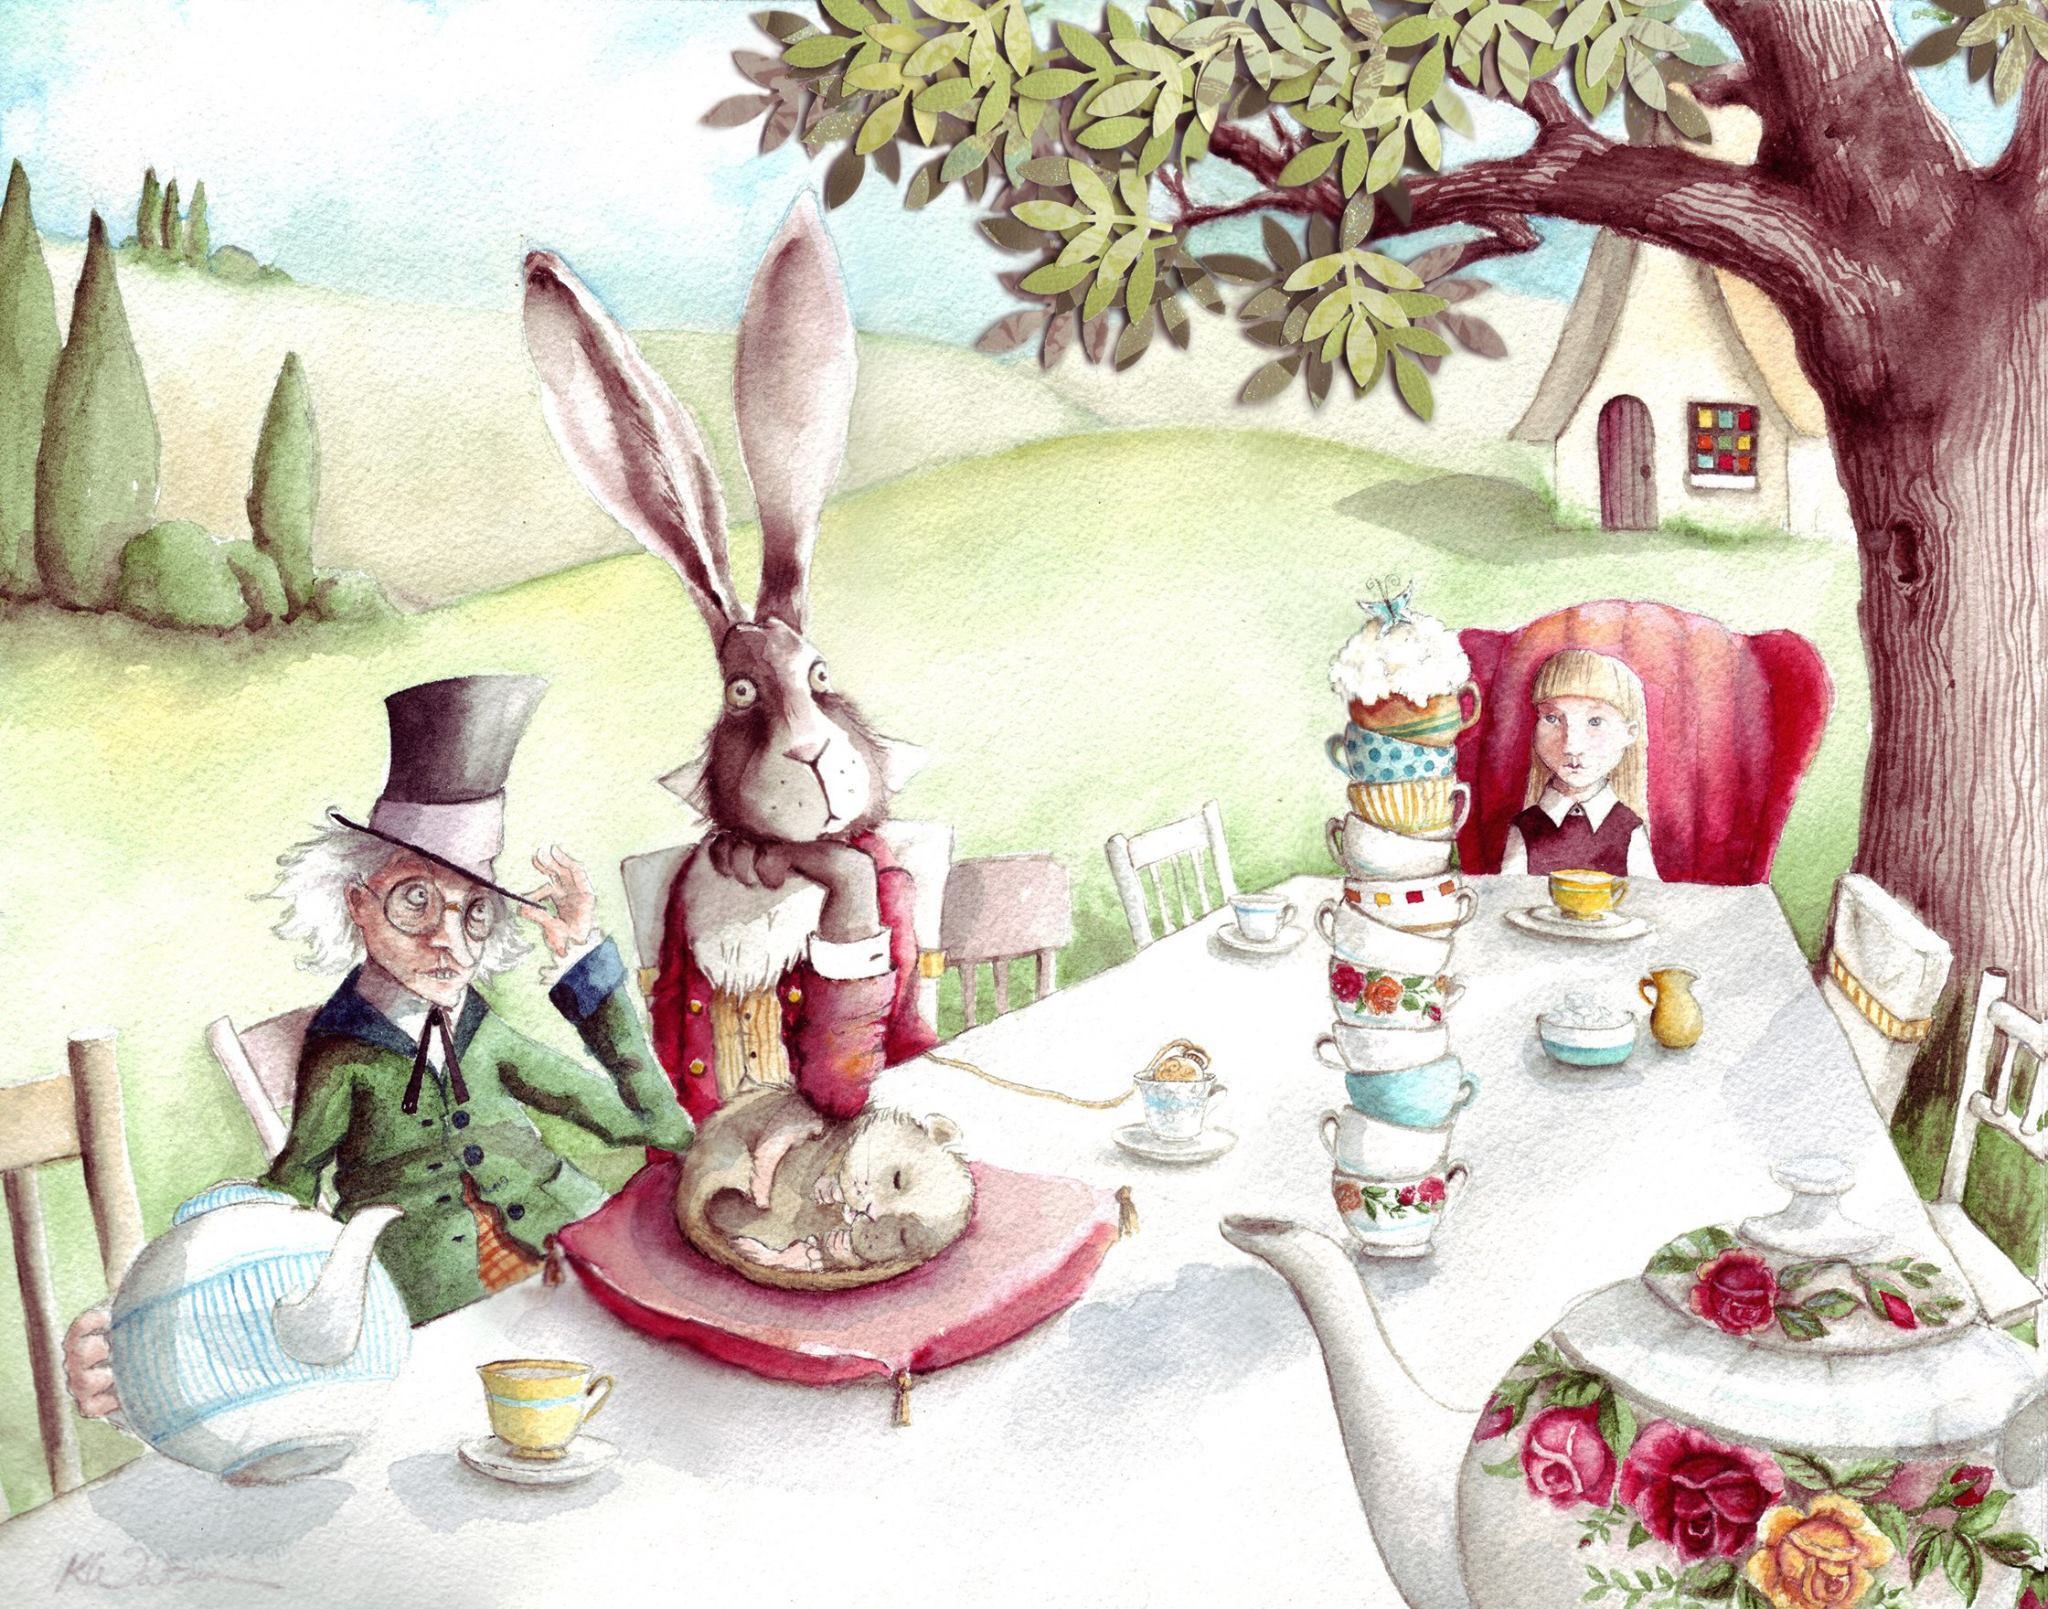 Иллюстрация из сказки Алиса в стране чудес